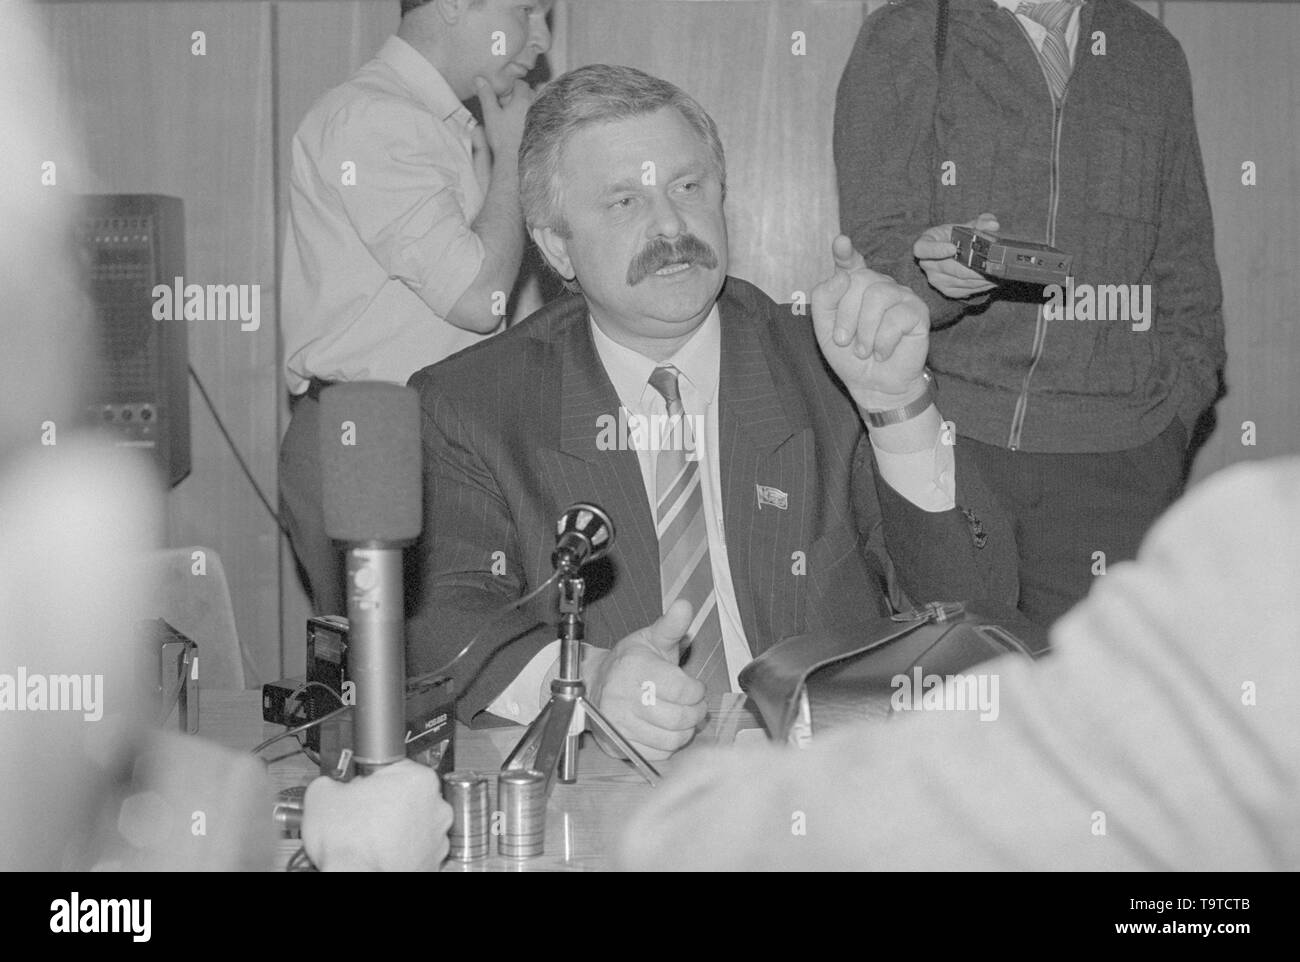 Moscou, Russie - le 28 mars 1991 : un député du peuple de la RSFSR Alexander Vladimirovitch Routskoï donne à la conférence de presse extraordinaire 3d Congrès des députés du peuple de la RSFSR russe. Banque D'Images